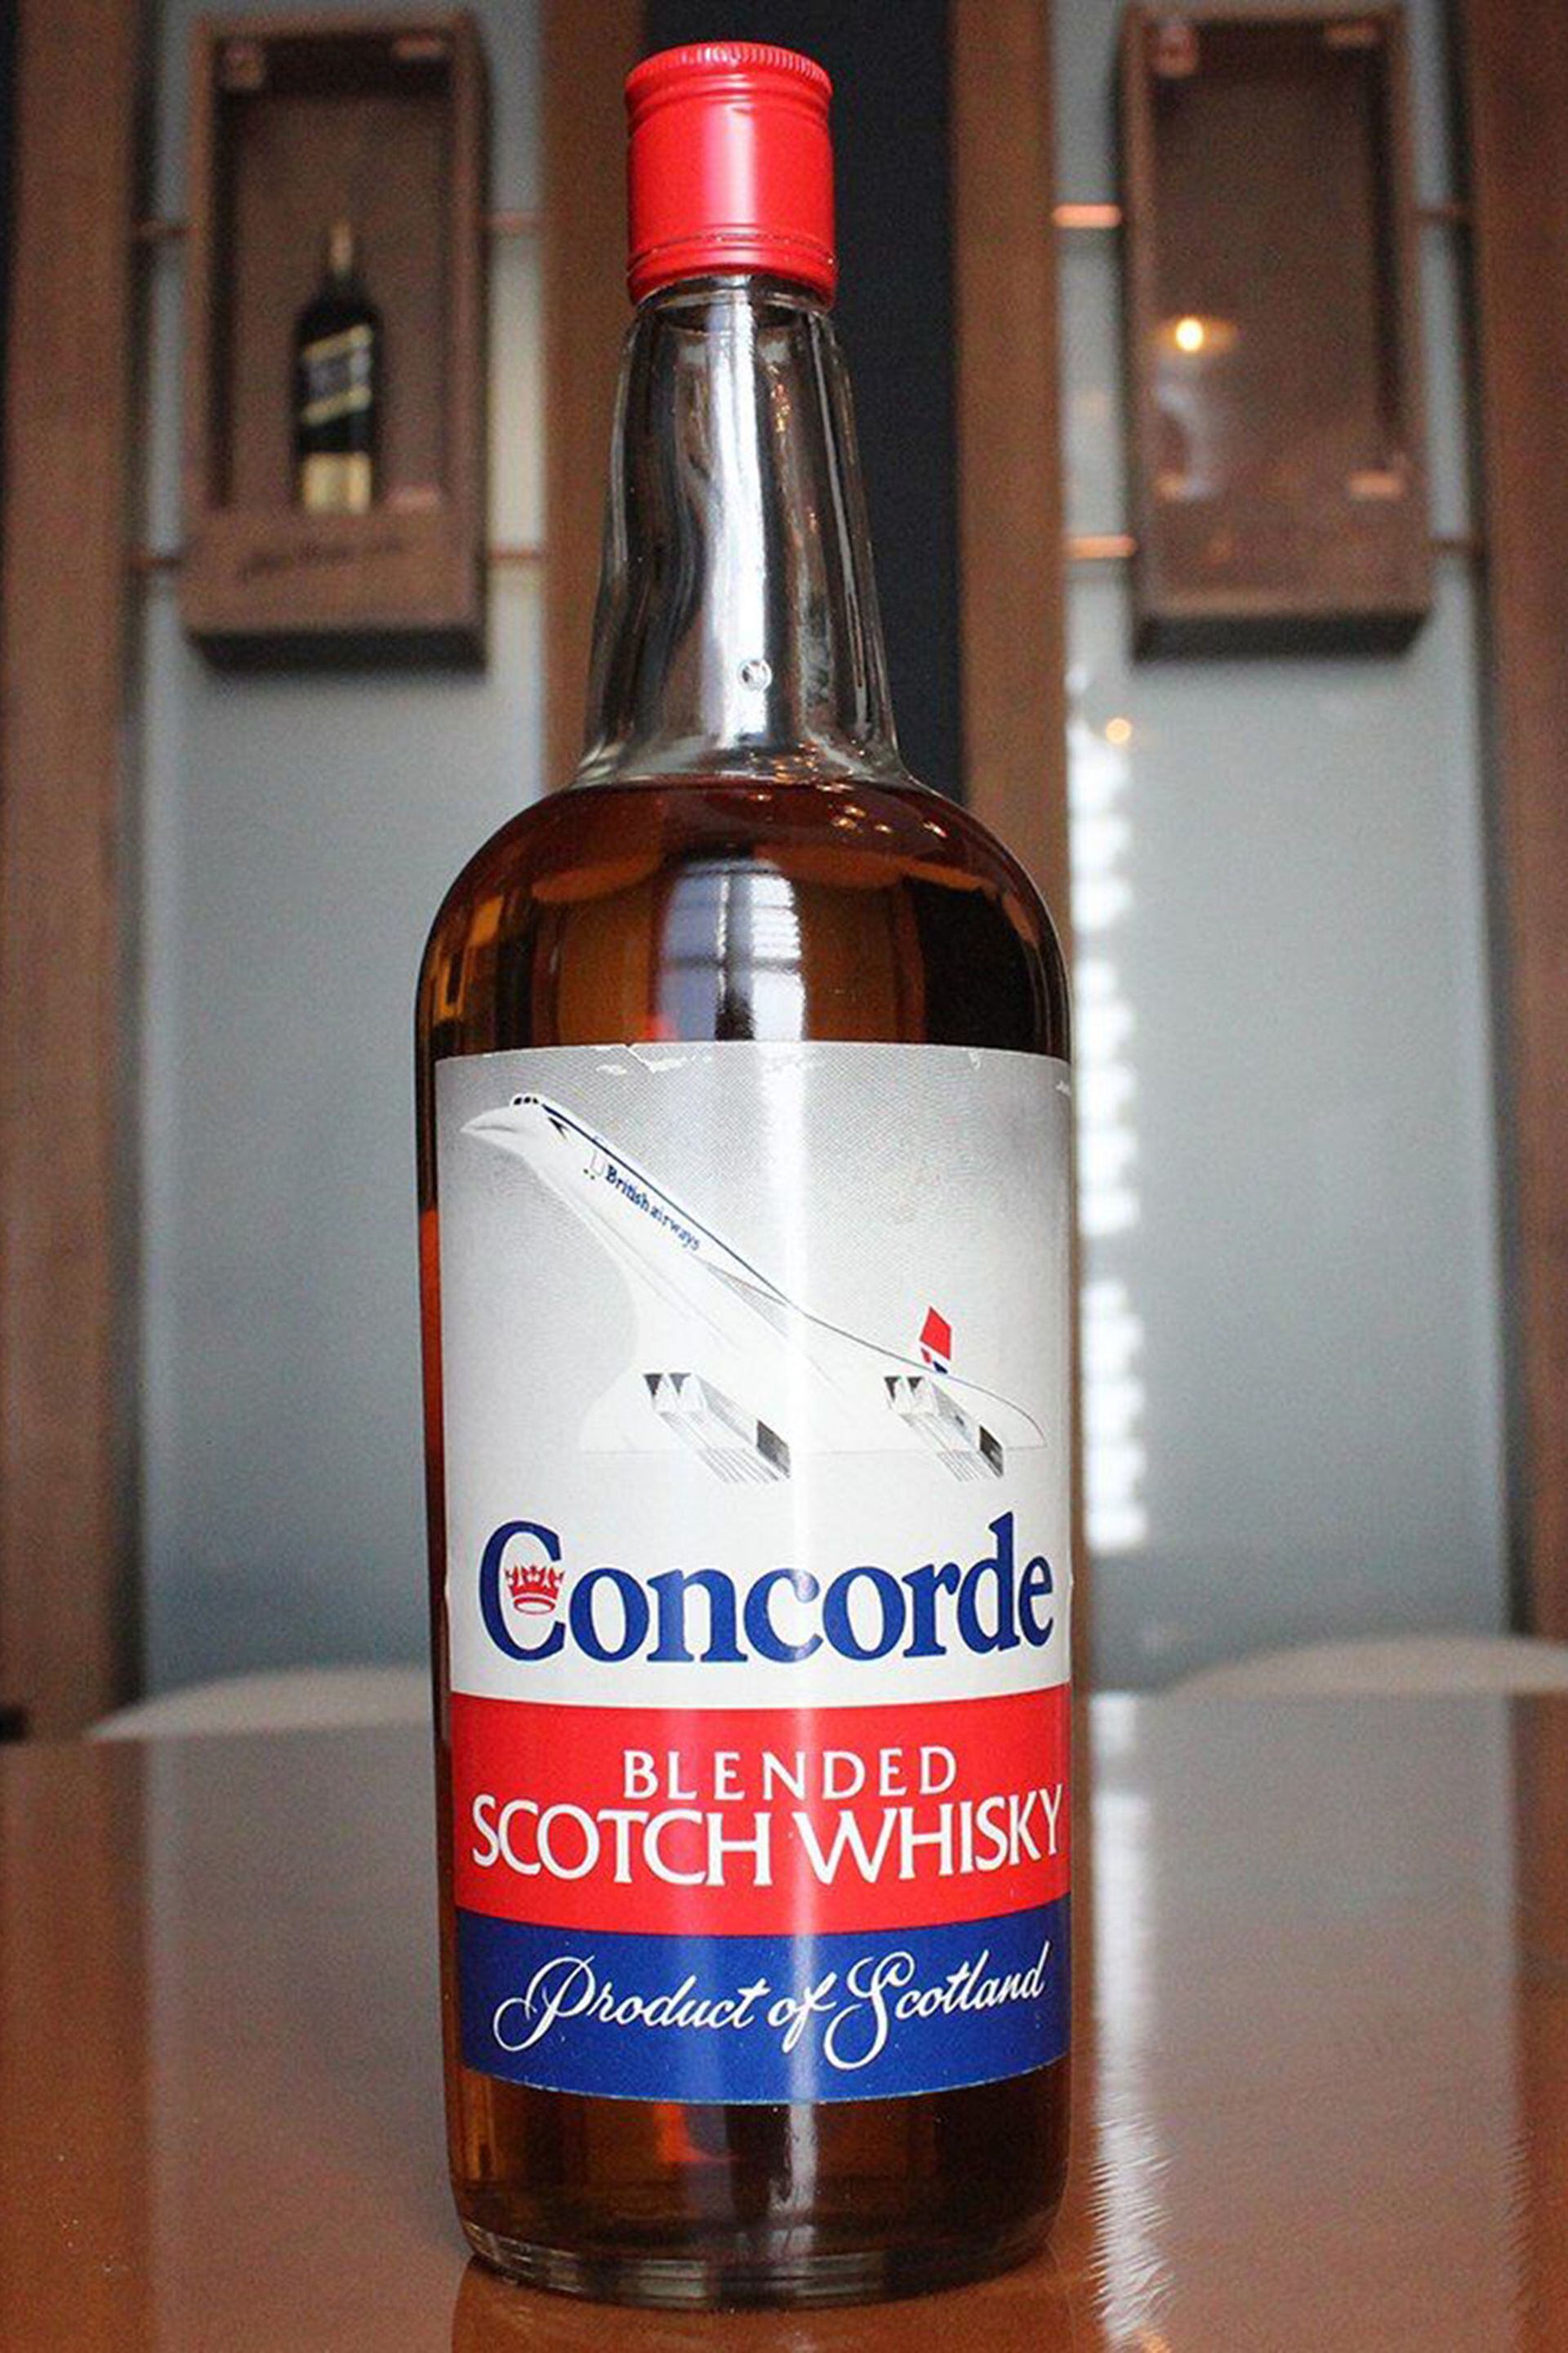 La botella que le dieron a los pasajeros del vuelo transatlántico Concorde: hay solo 3 en el mundo y una pertenece al Museo del Whisky. Es incalculable su valor